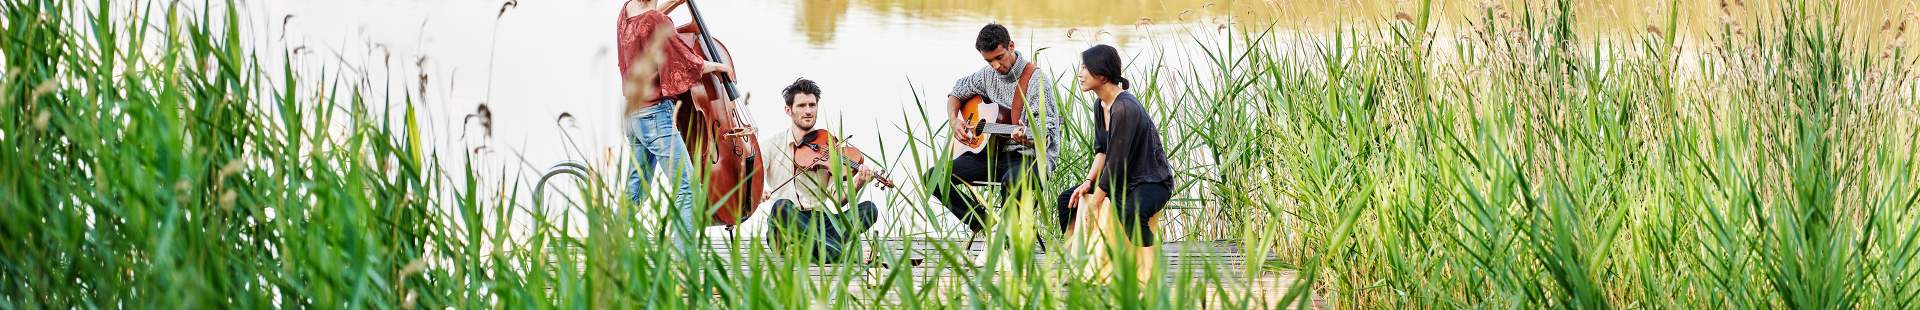 VRK Berufsunfähigkeitsabsicherung – Eine Gruppe junger Menschen sitzt an einem See und spielt auf ihren Instrumenten.